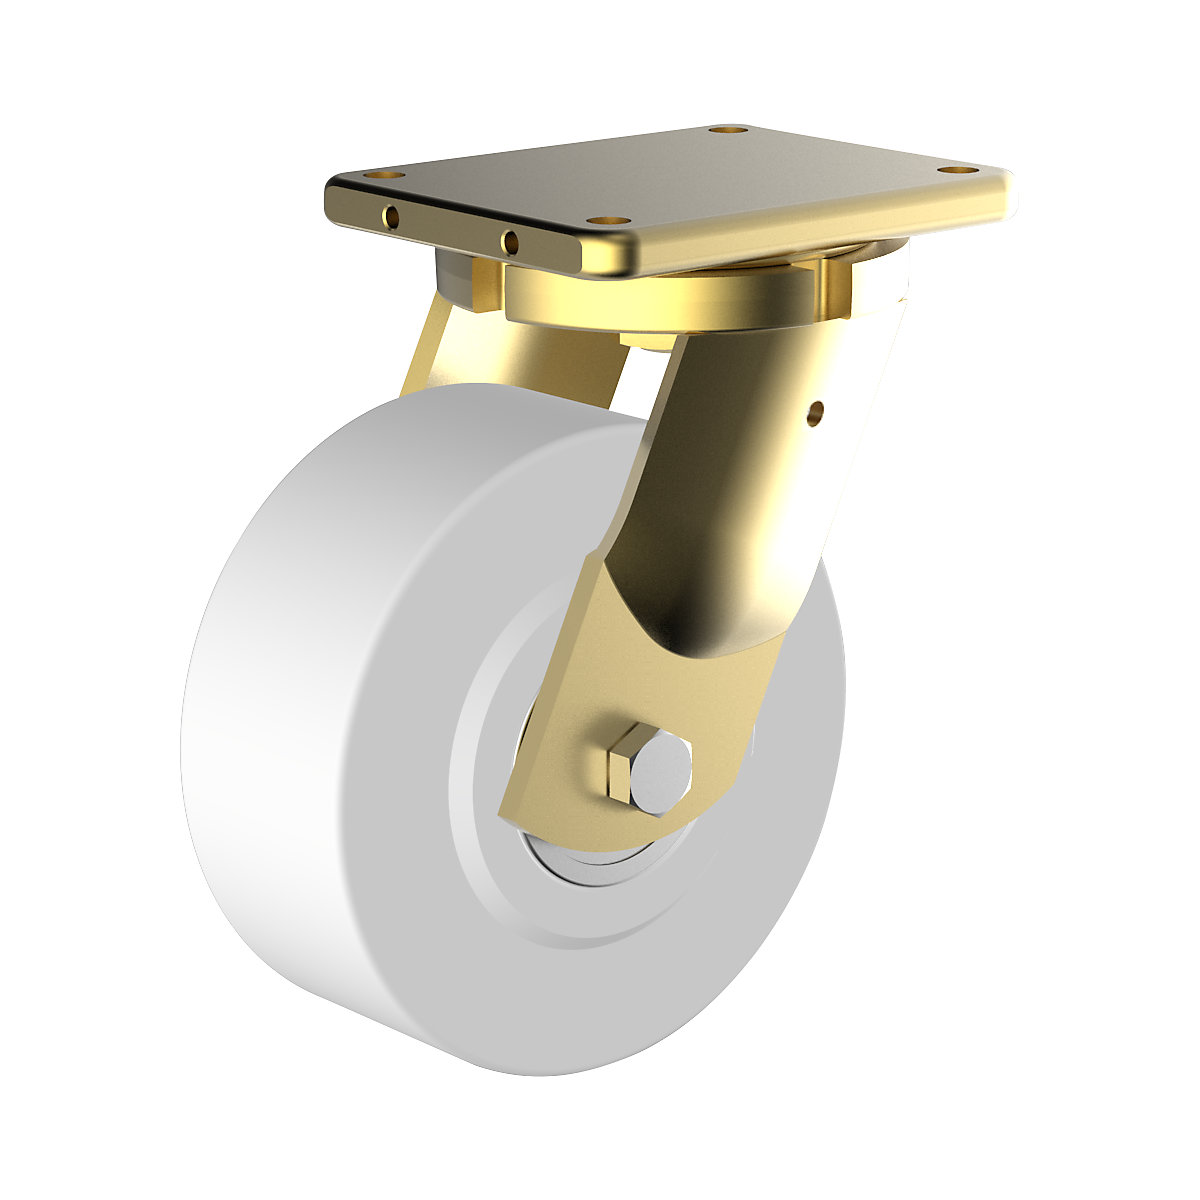 Polyamidové koleso, oceľové puzdro, zvárané – Wicke, Ø x šírka kolesa 100 x 55 mm, otočné koliesko-3